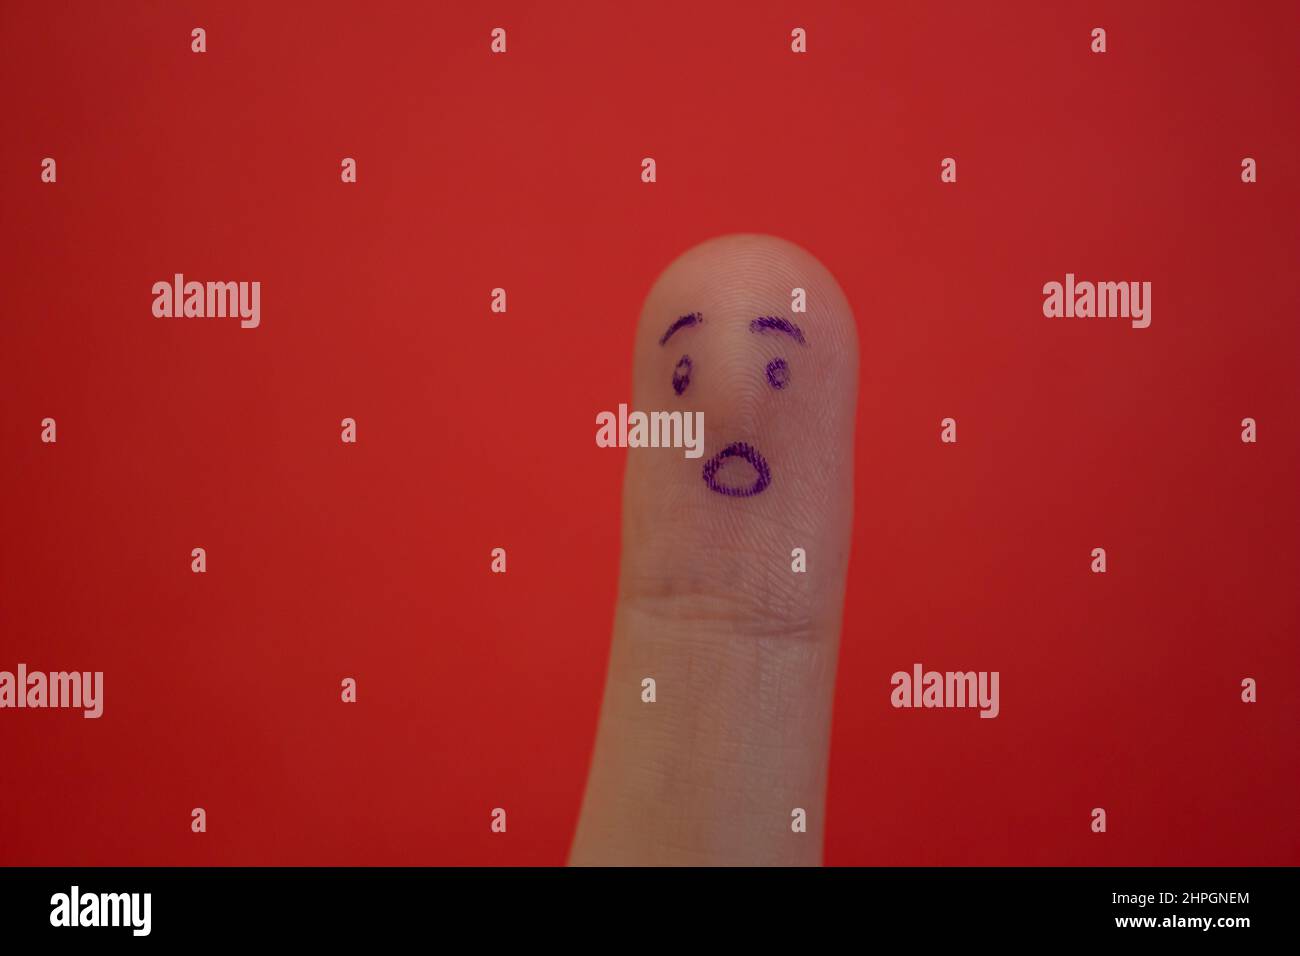 Schockiertes Gesicht auf Finger isoliert auf rotem Hintergrund gezeichnet. Witziger Gesichtsausdruck am Finger. Stockfoto